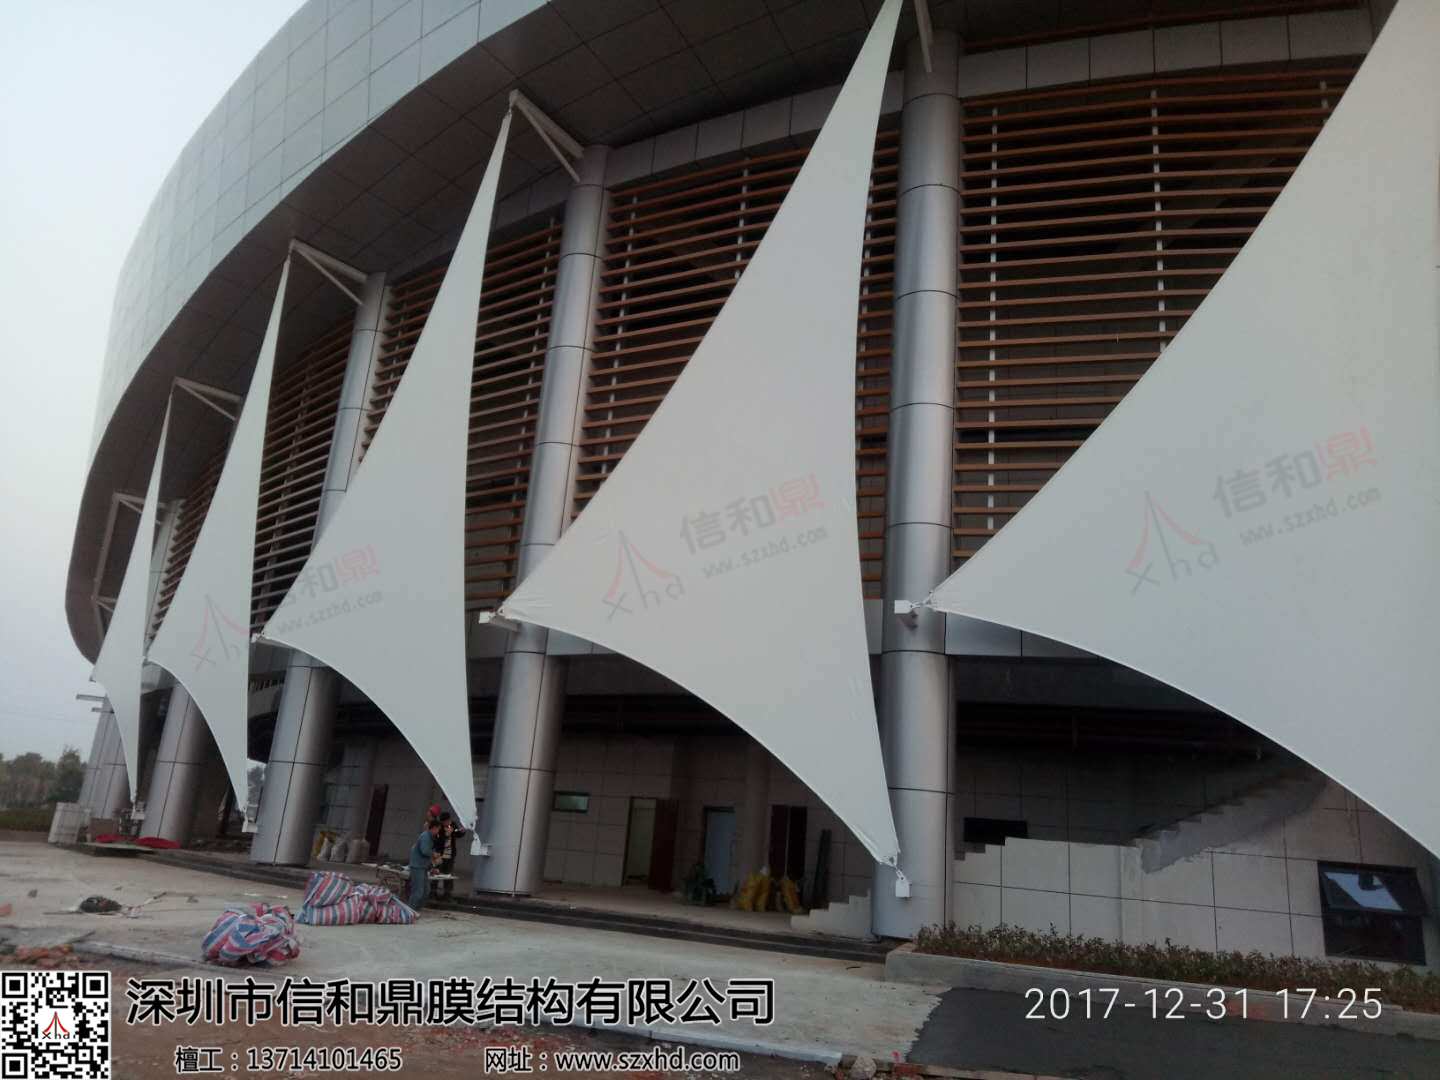 江西赣州兴国县体育公园体育馆外立面膜结构工程